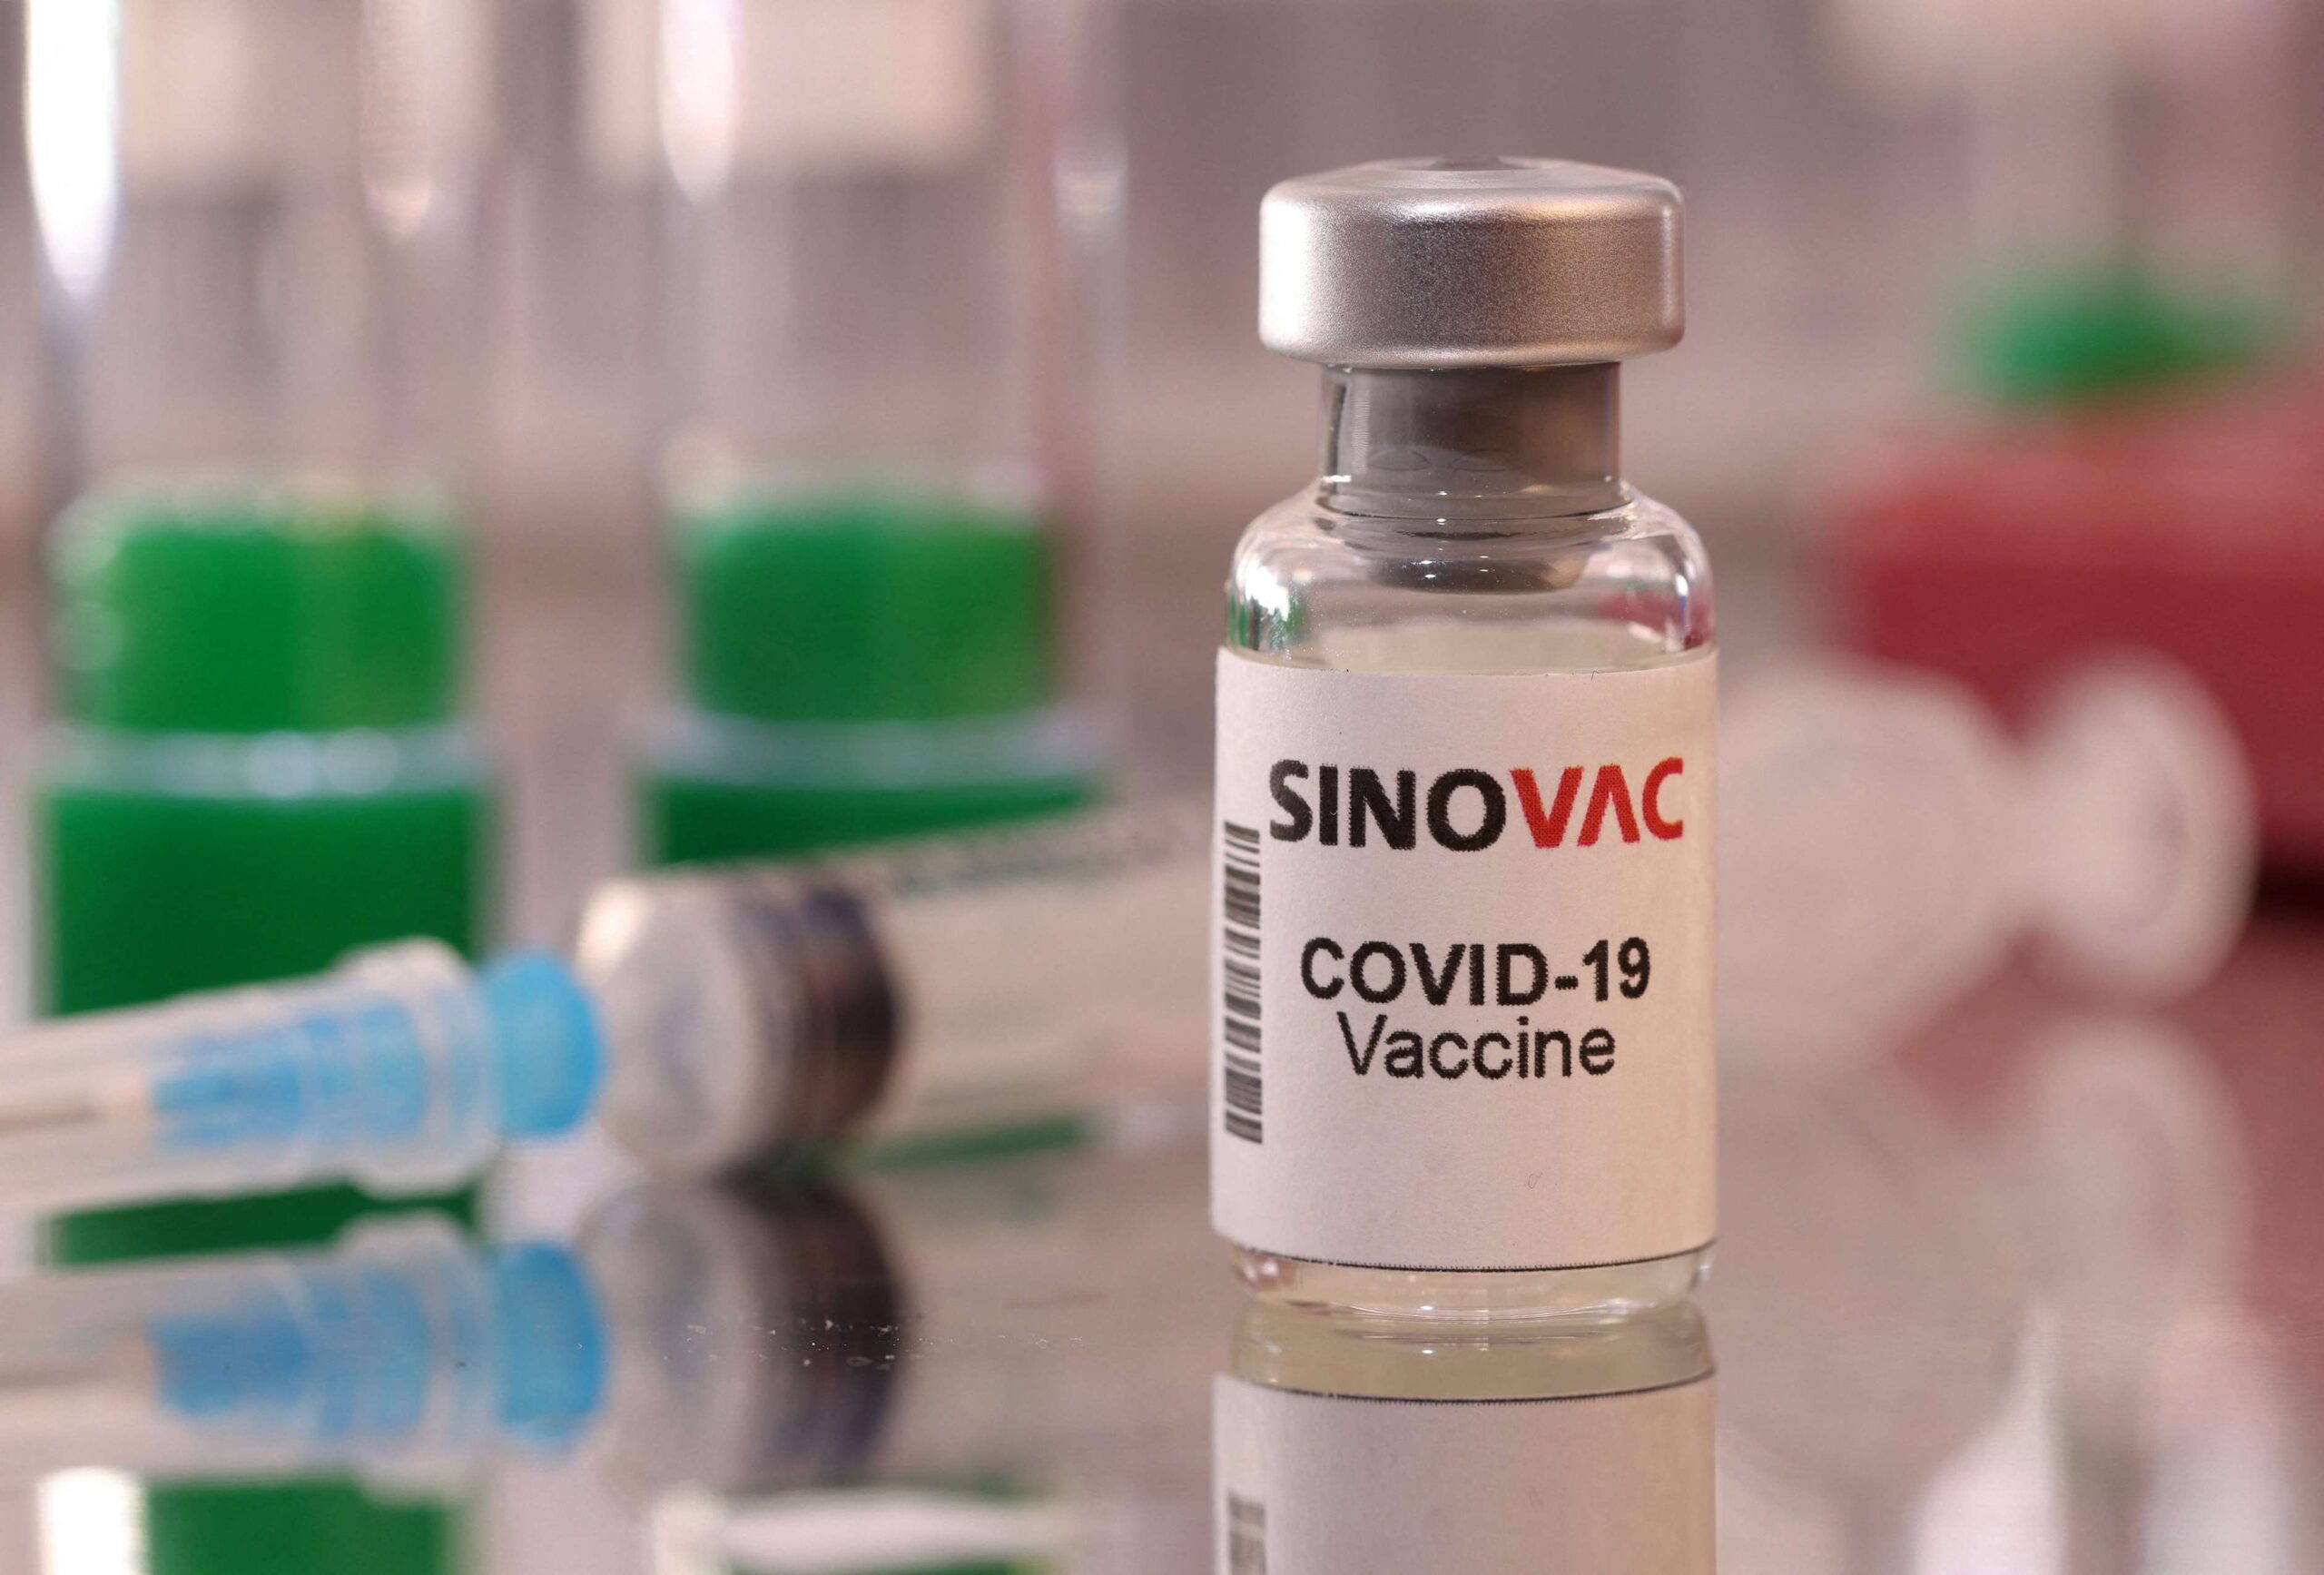 China acusa EUA de “intenção maligna” para desacreditar suas vacinas contra Covid